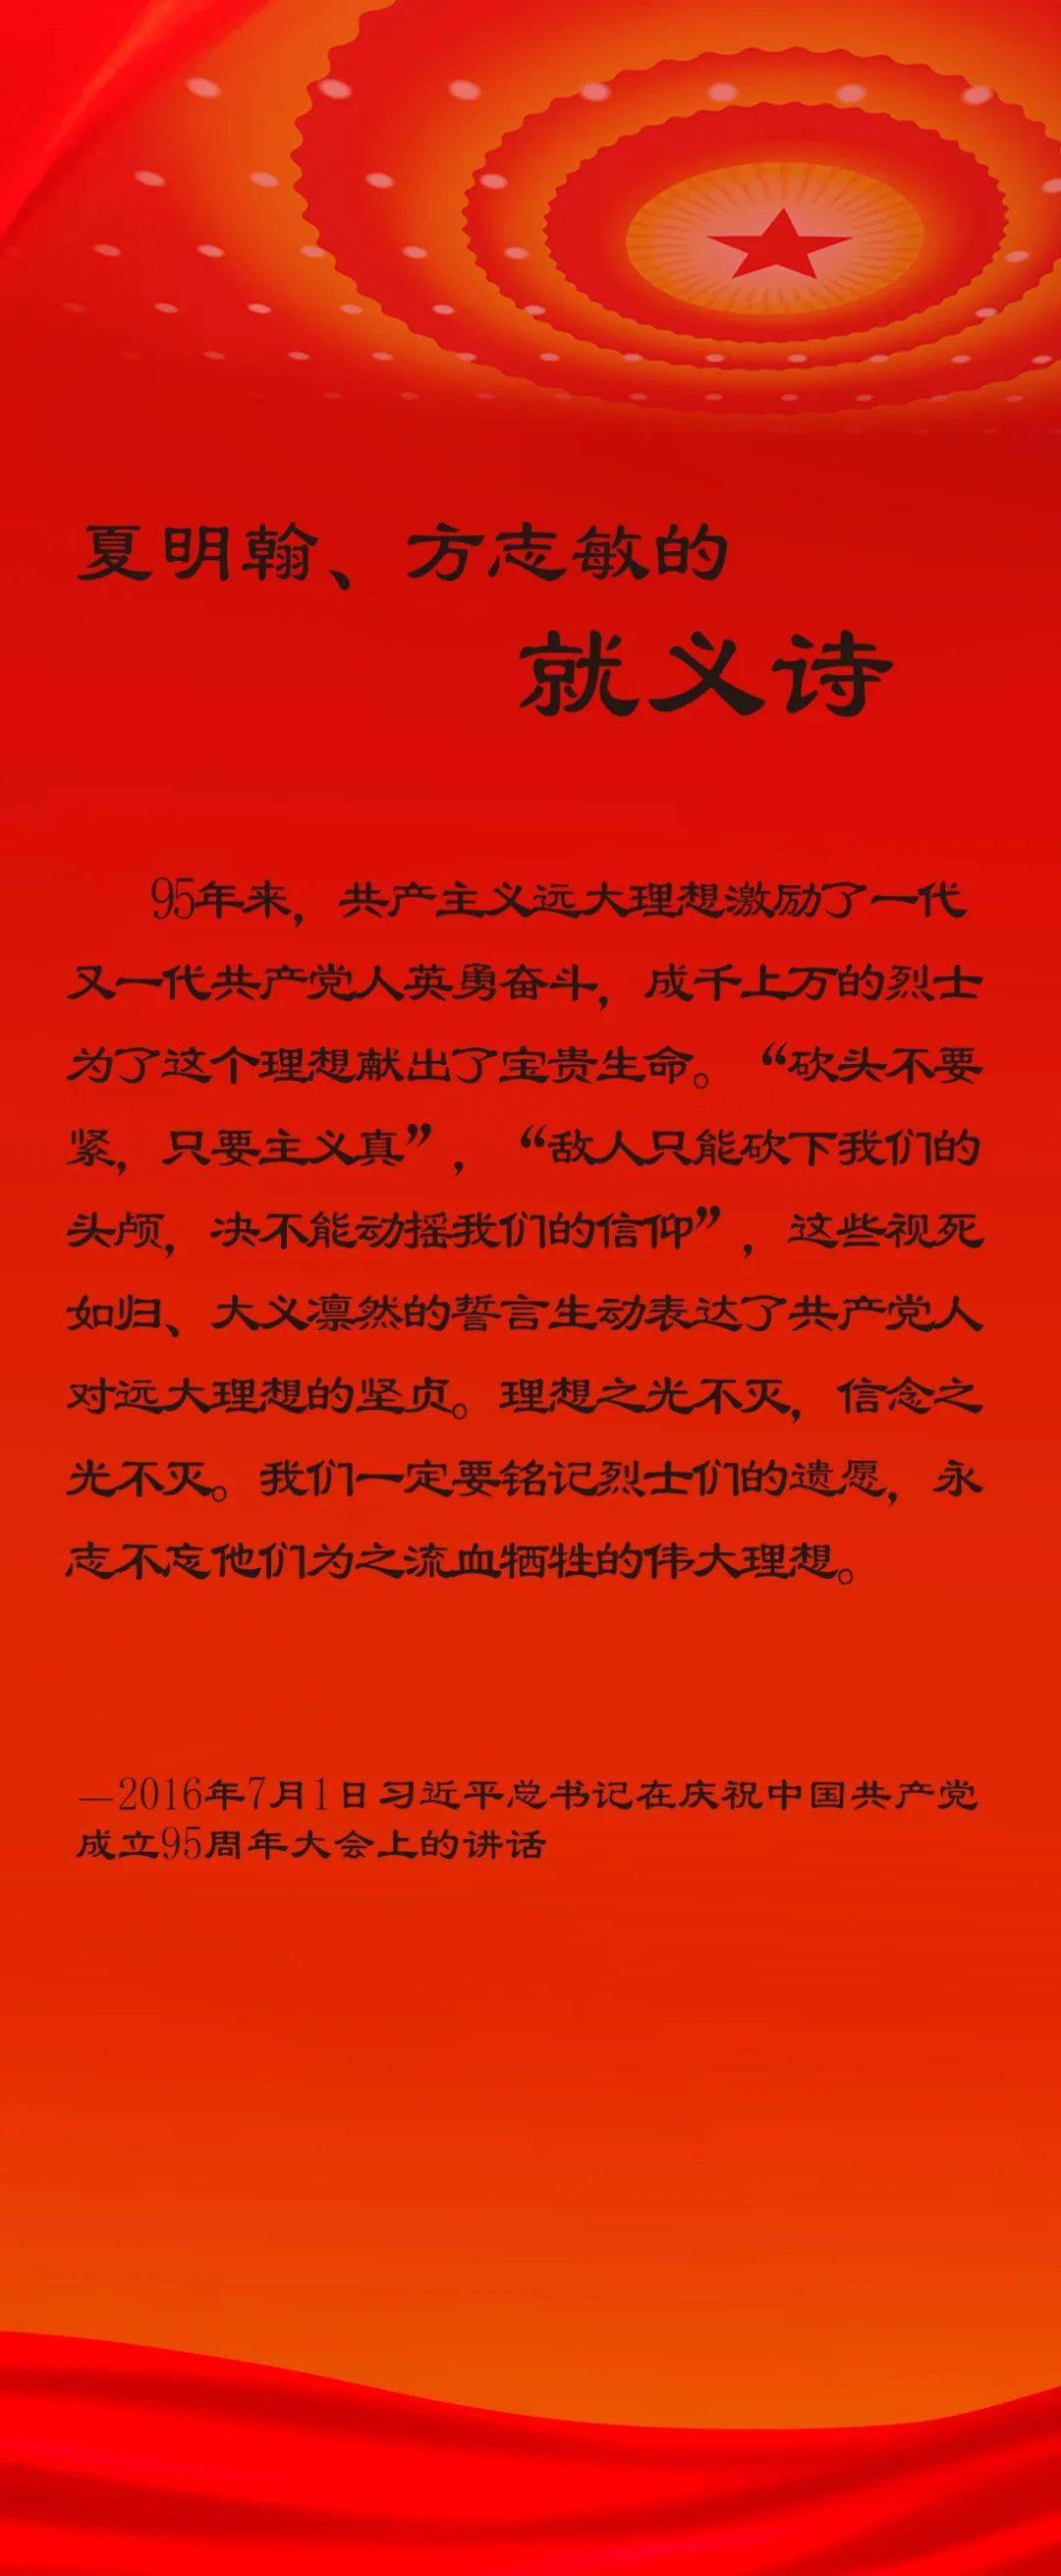 建党百年丨方志敏狱中笔墨明心志为了可爱的中国